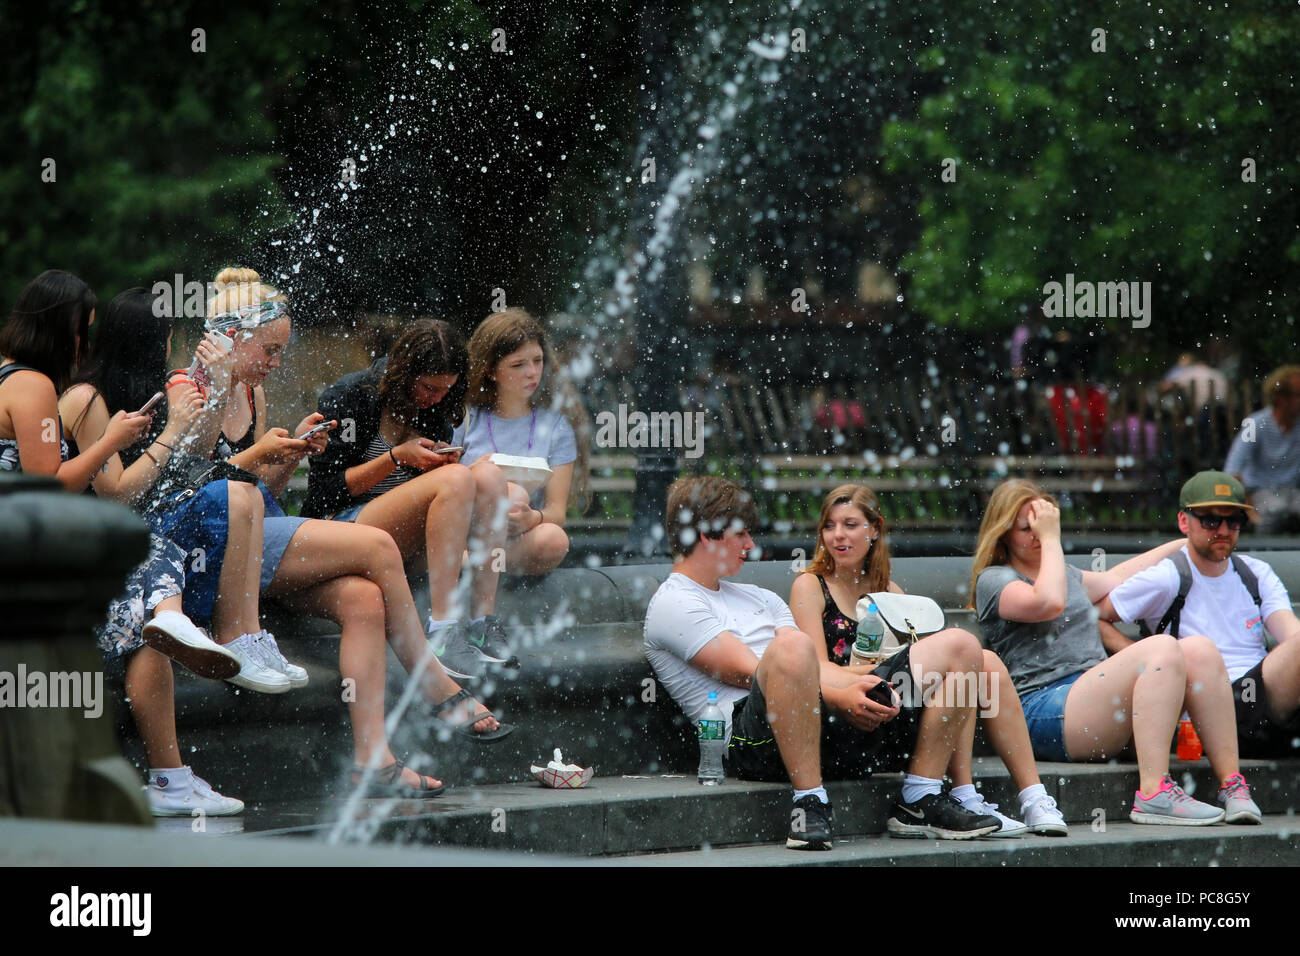 NEW YORK, NY - 10 juillet : un passage sur une chaude journée d'été à Washington Square Park à Manhattan le 10 juillet 2017 à New York, USA. Banque D'Images